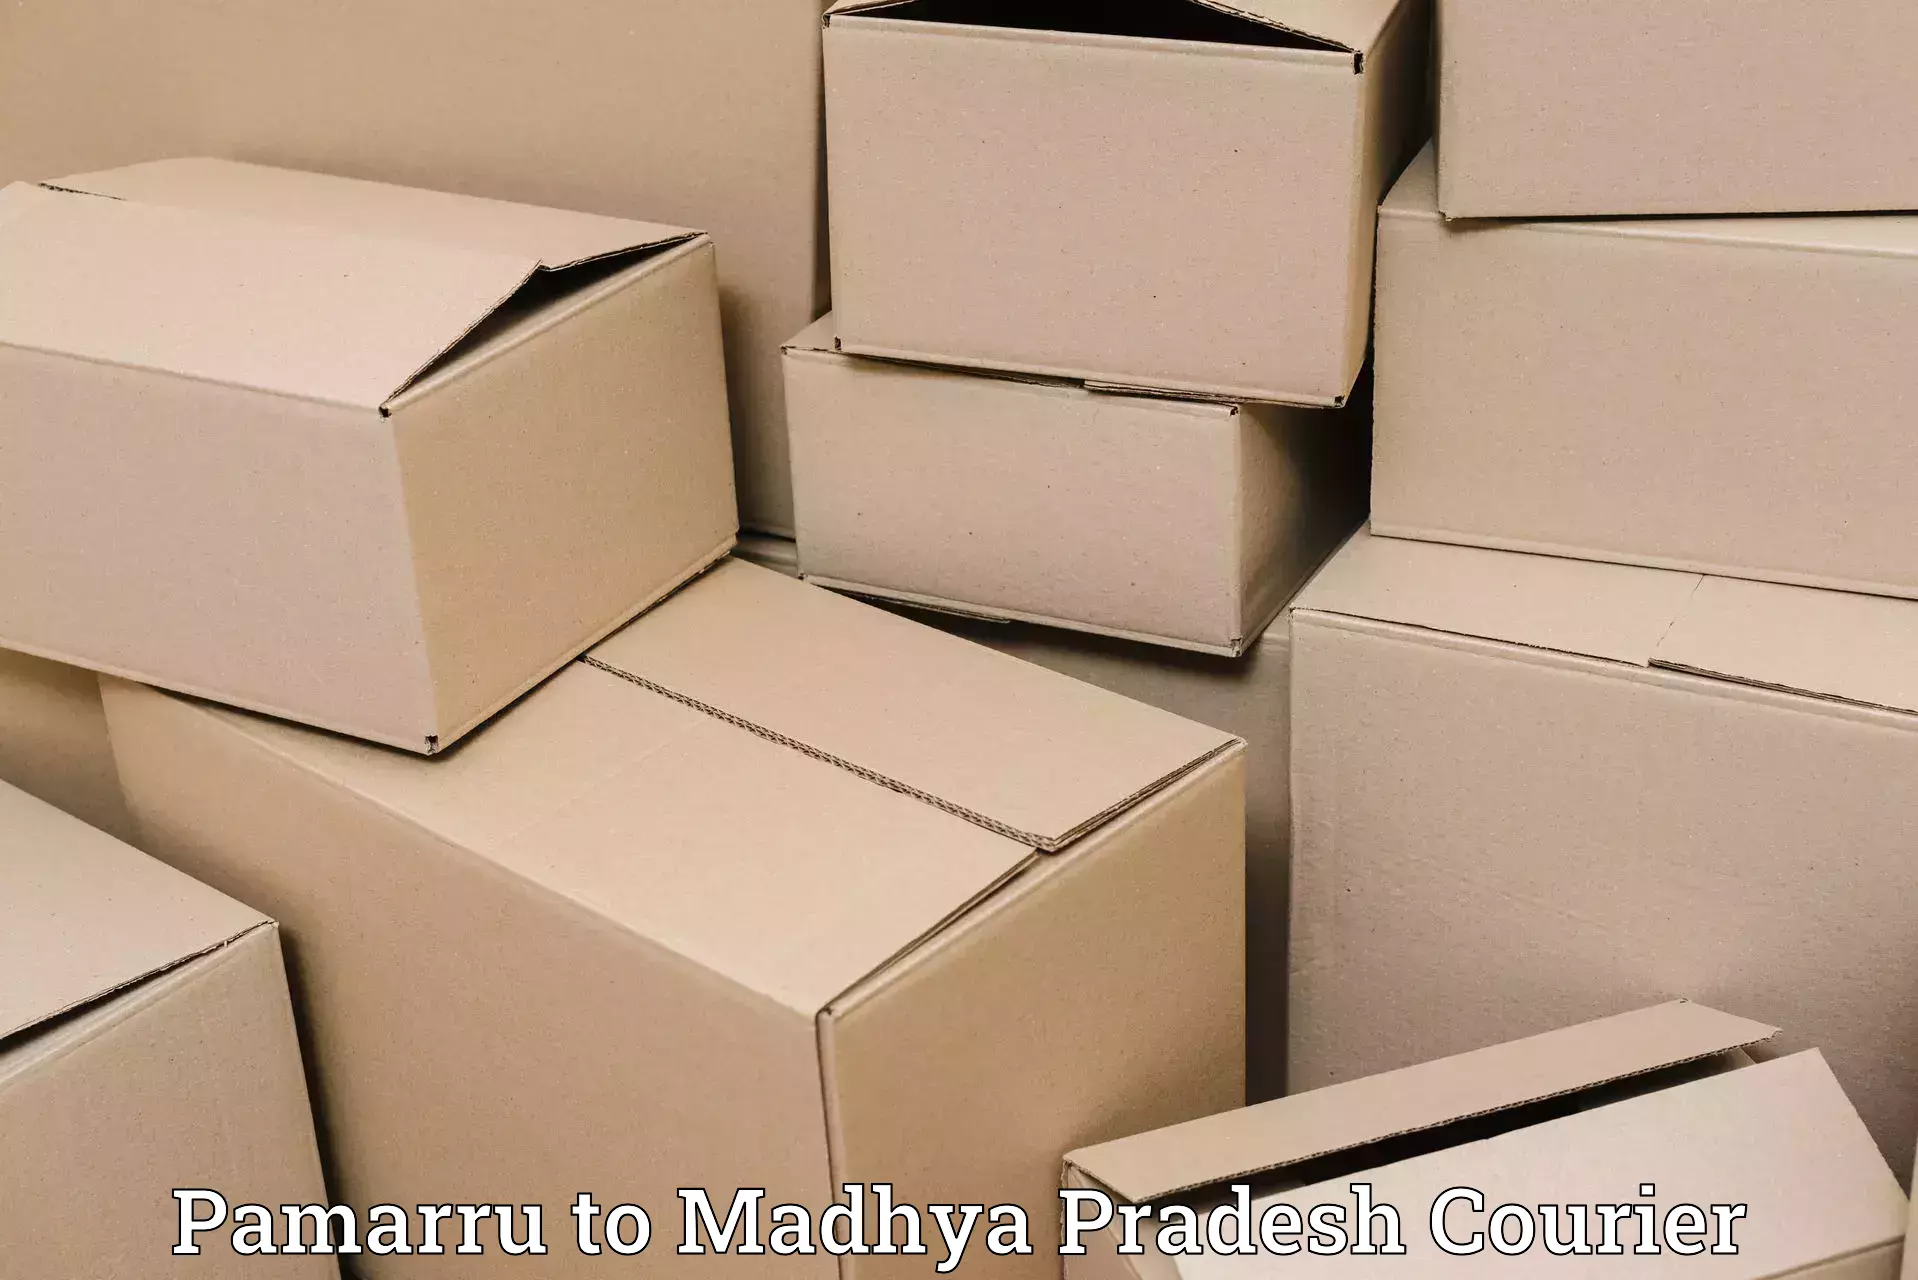 Speedy delivery service Pamarru to Gadarwara